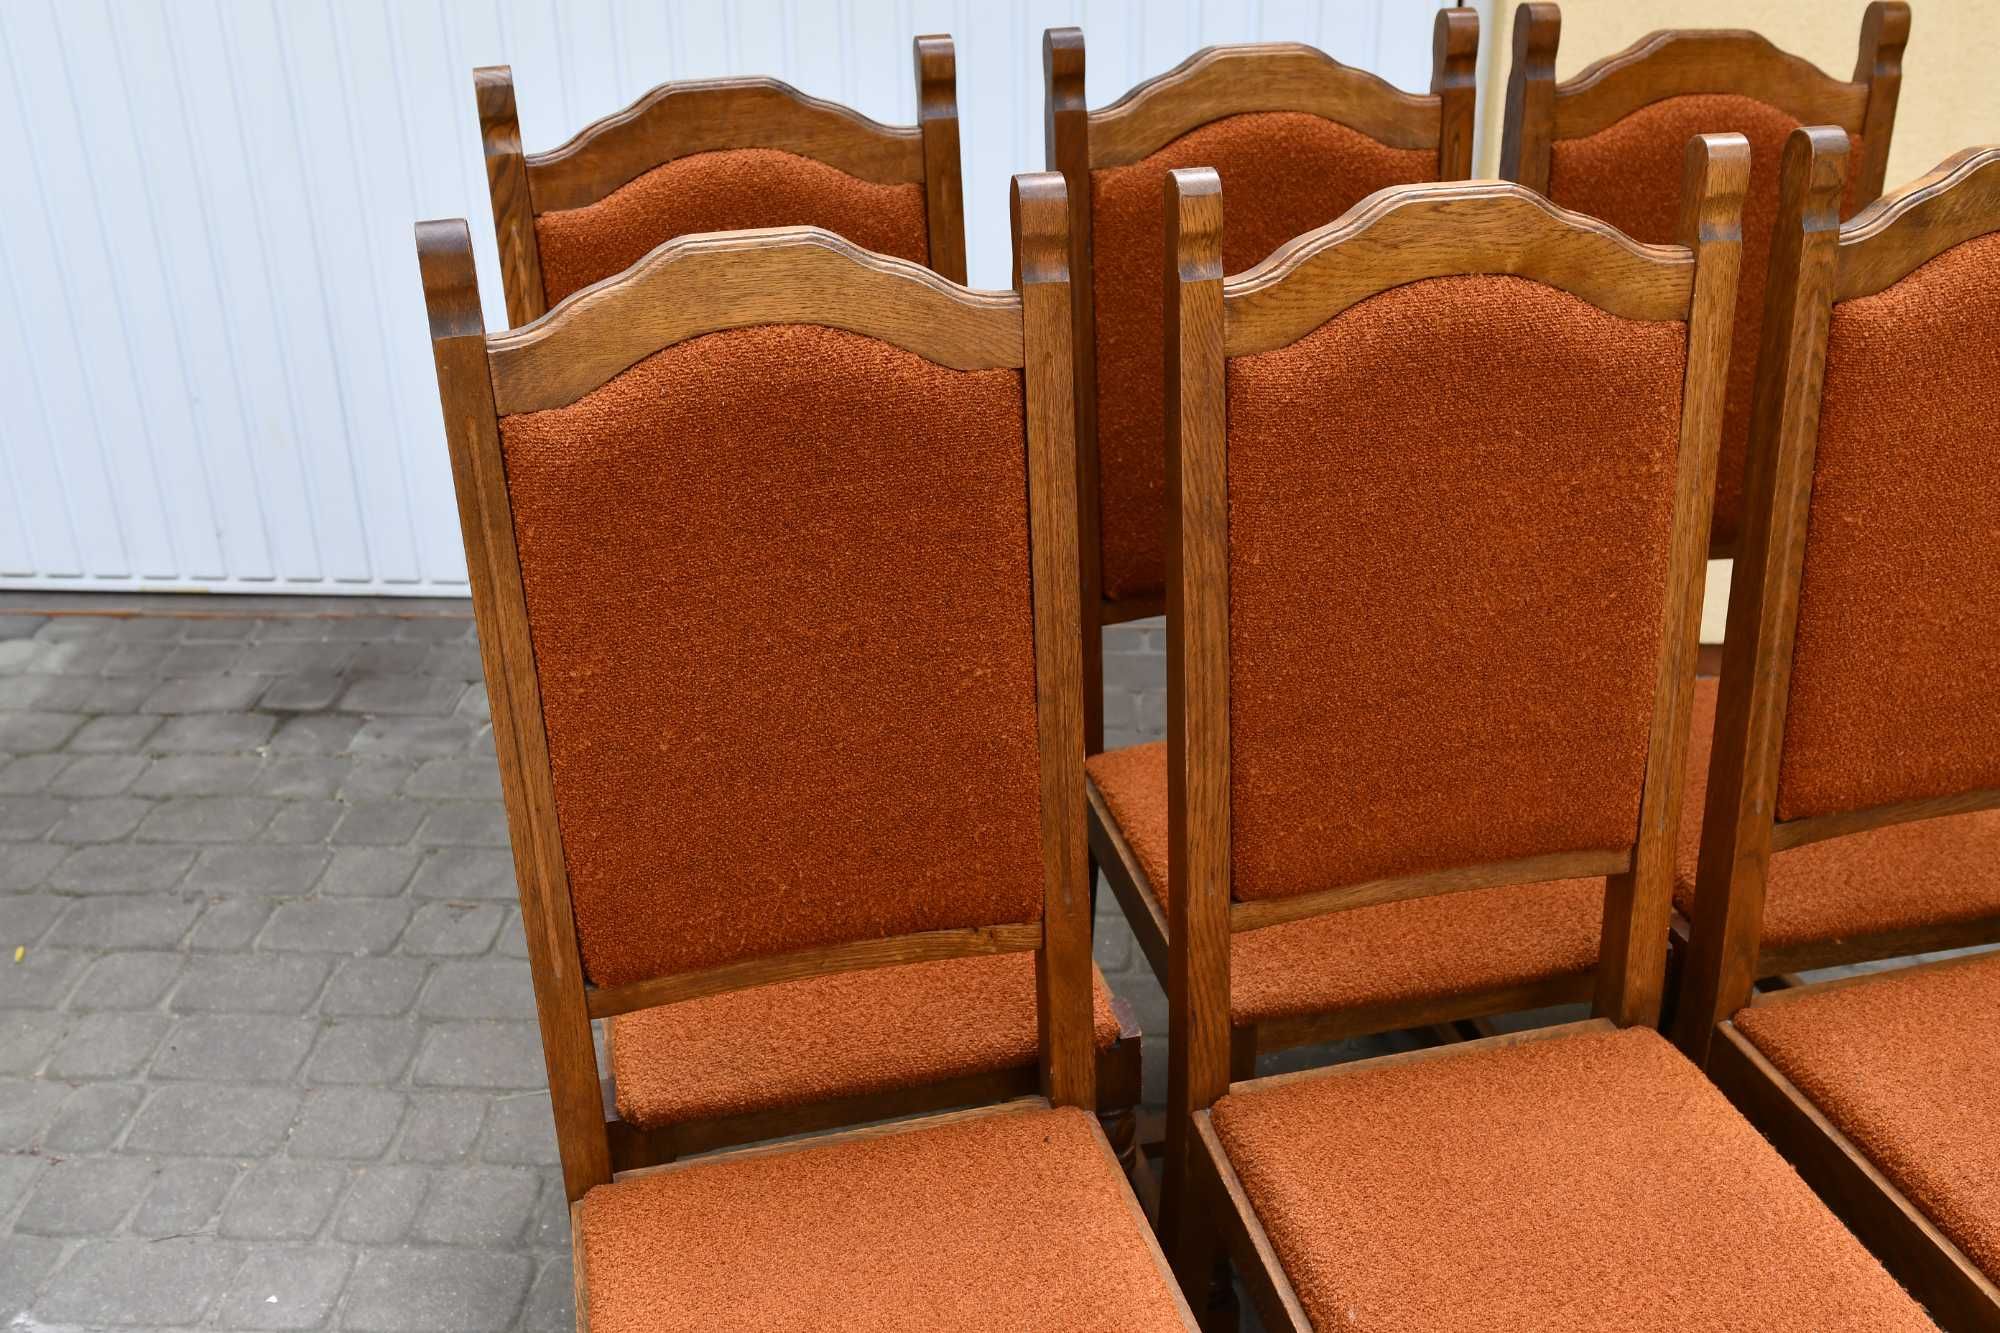 Krzesła dębowe tapicerowane